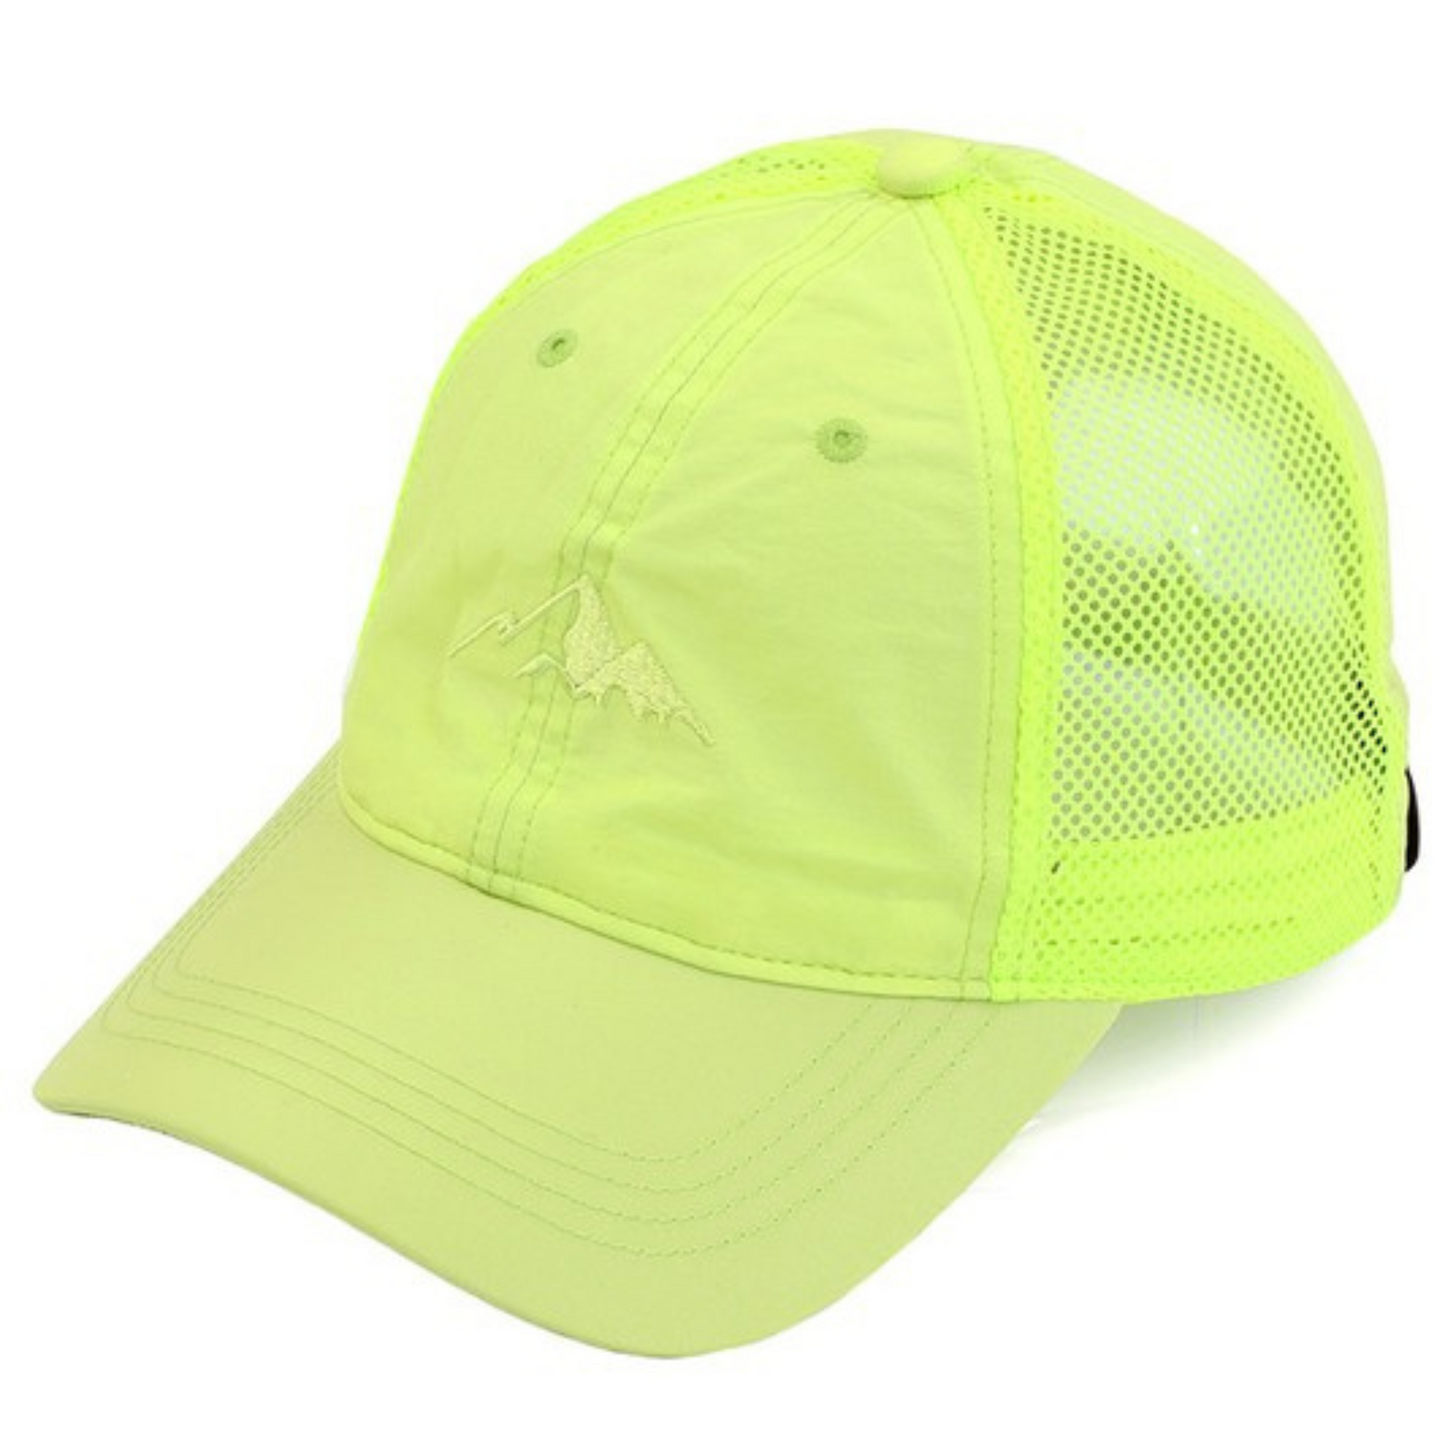 Weightless windbreaker baseball cap in Lime green